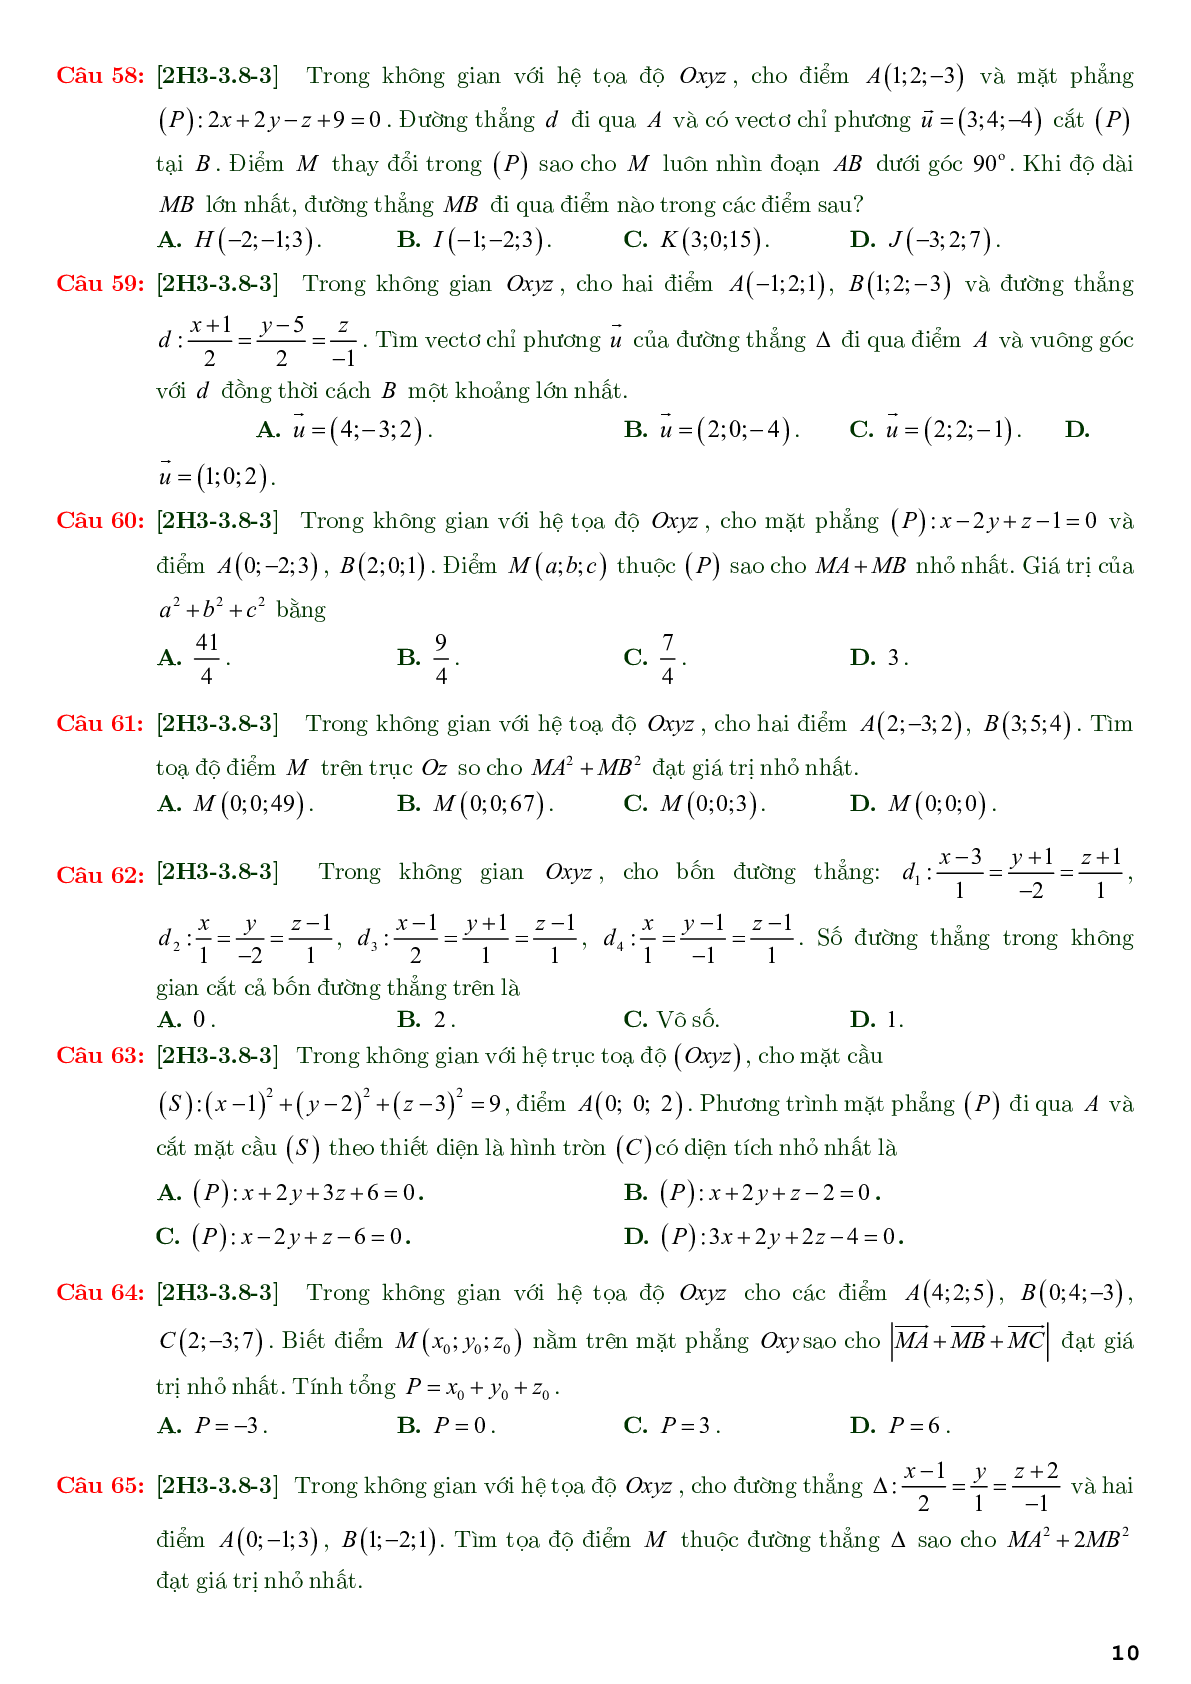 86 câu trắc nghiệm về phương trình đường thẳng nâng cao - có đáp án chi tiết (trang 10)